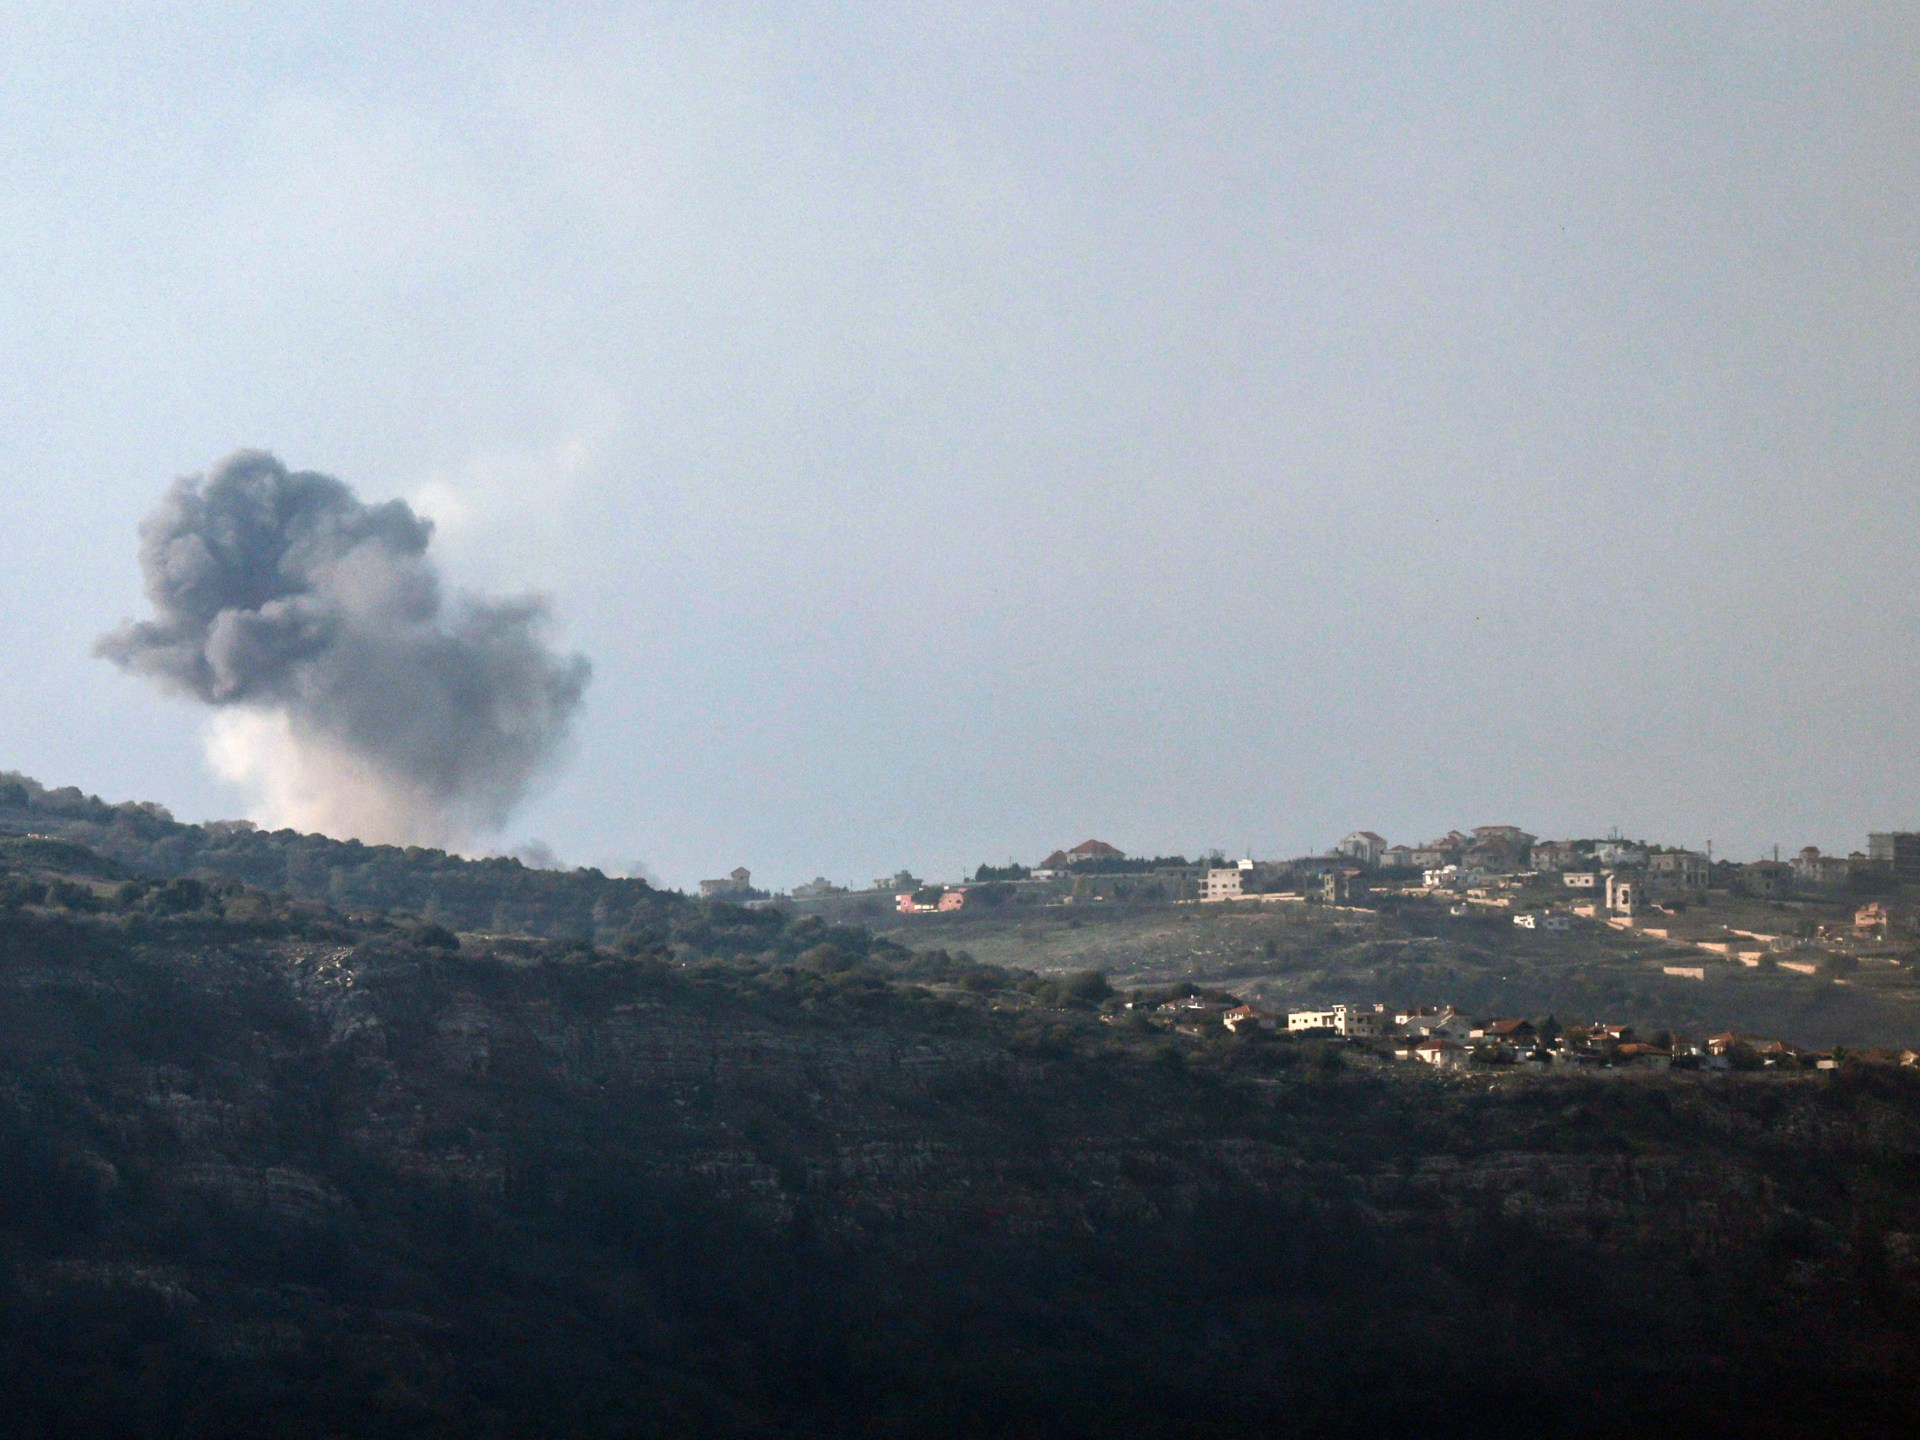 استهداف مواقع عسكرية إسرائيلية في مزارع شبعا | أخبار – البوكس نيوز